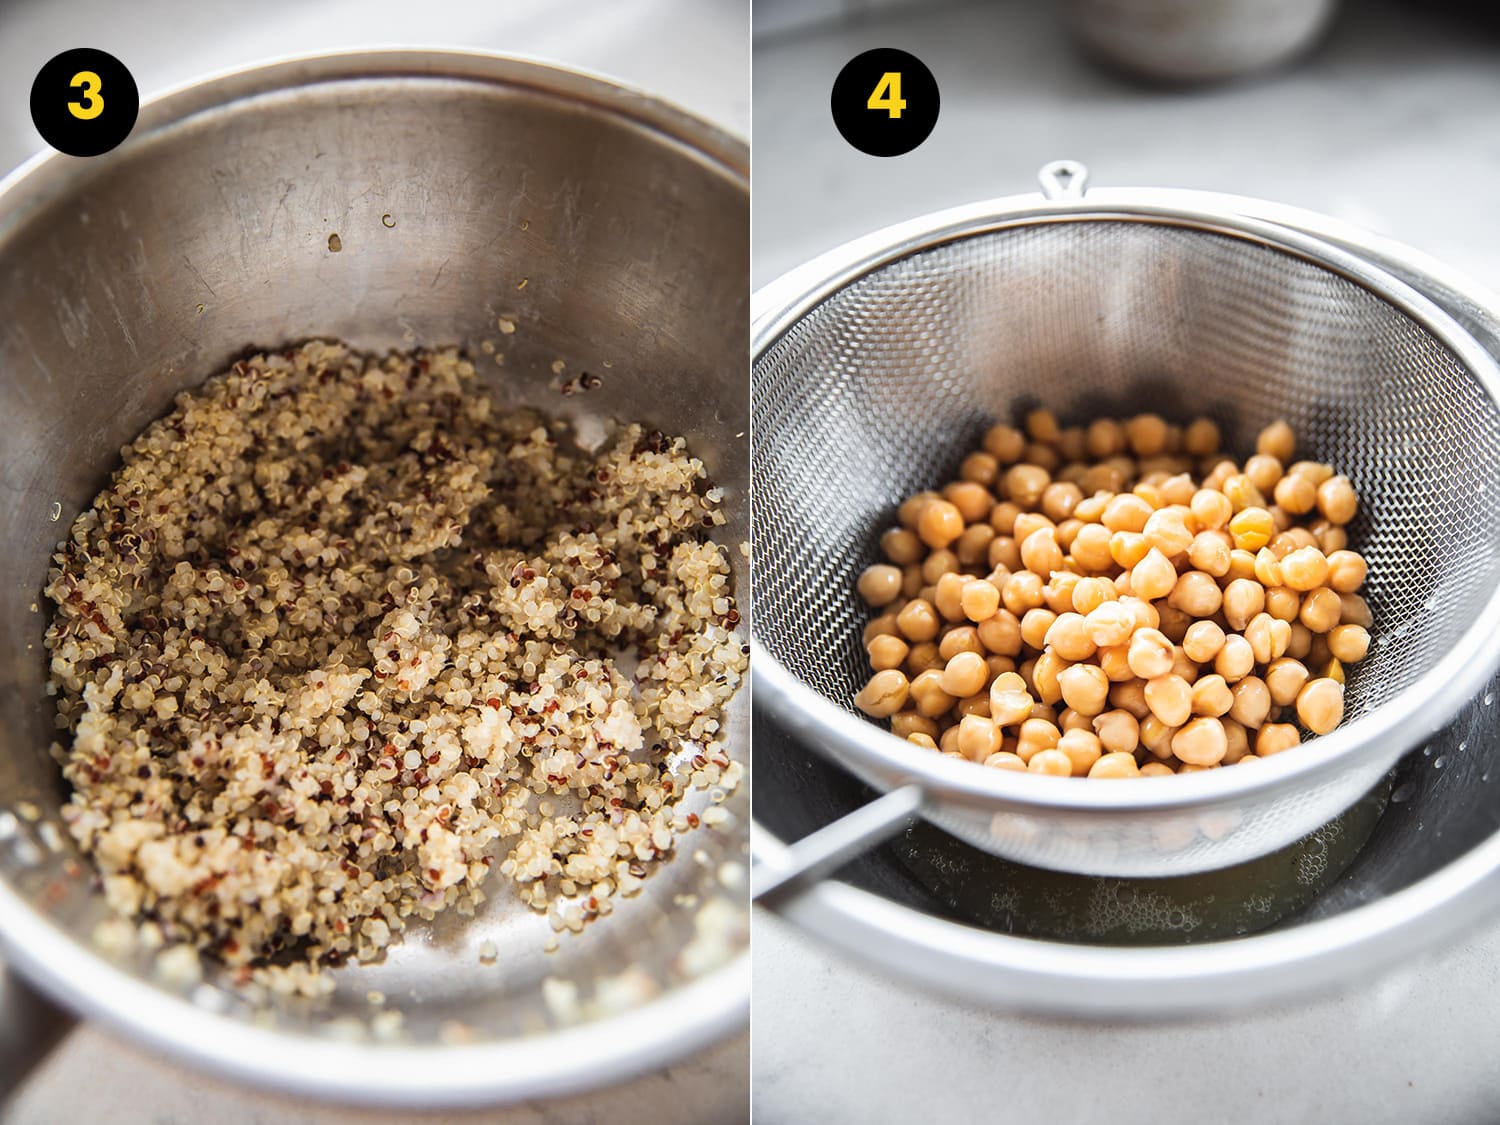 Cuire le quinoa dans une casserole et rincer et égoutter les pois chiches en conserve